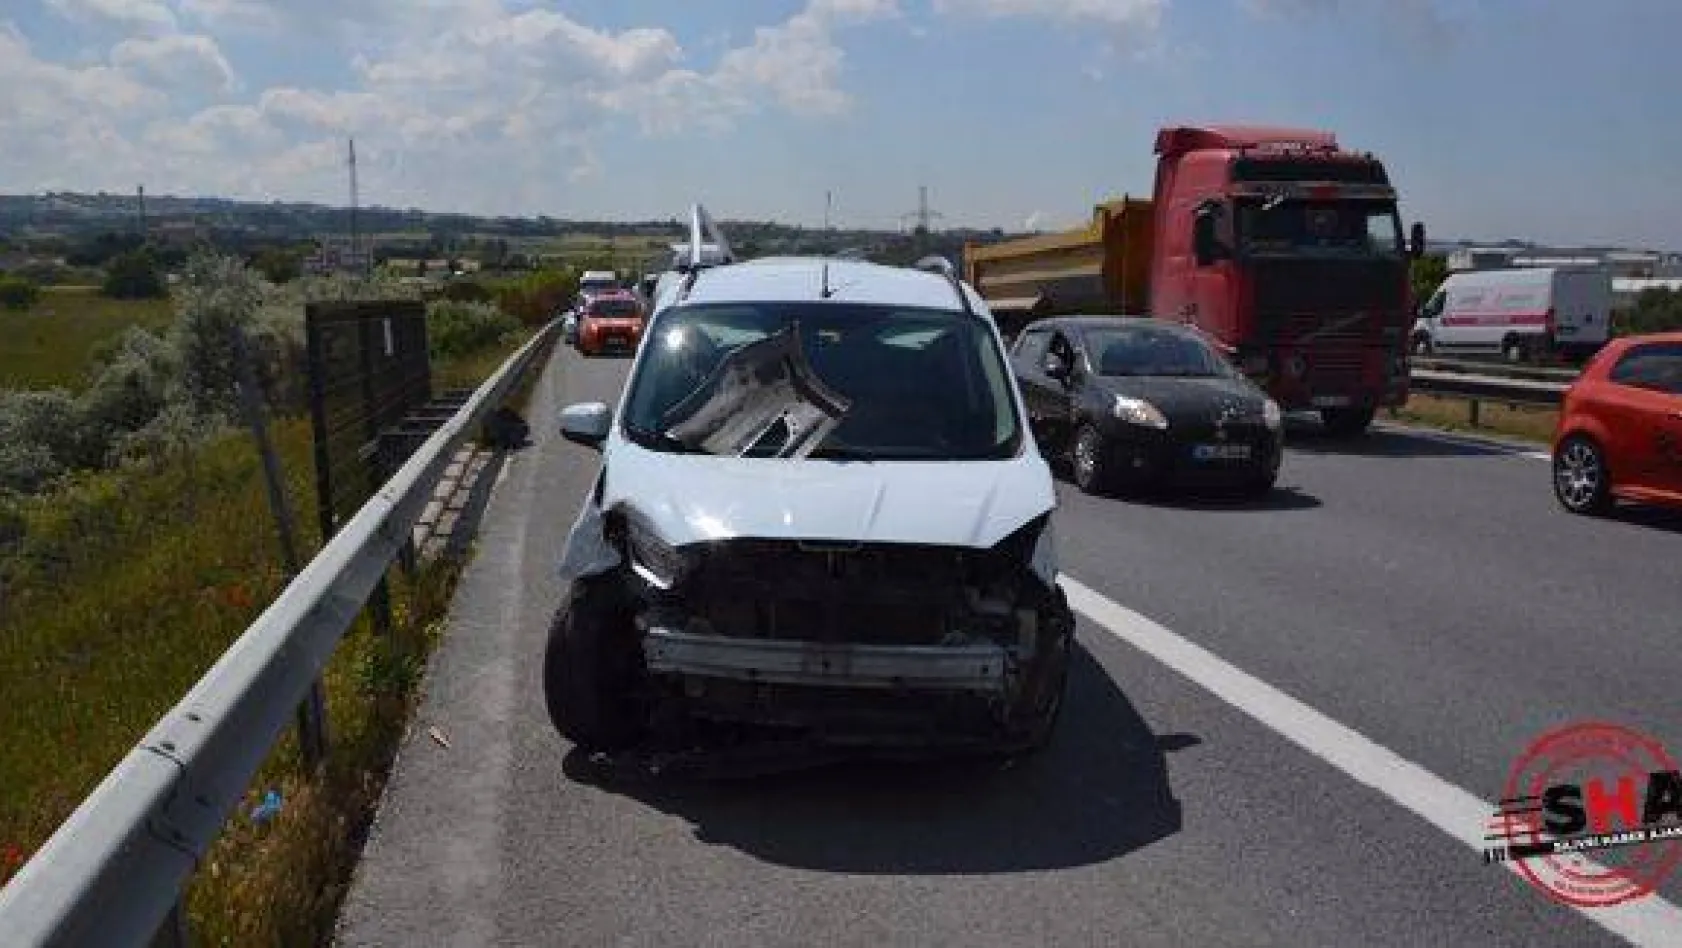 Selimpaşa'da kaza: 3 yaralı